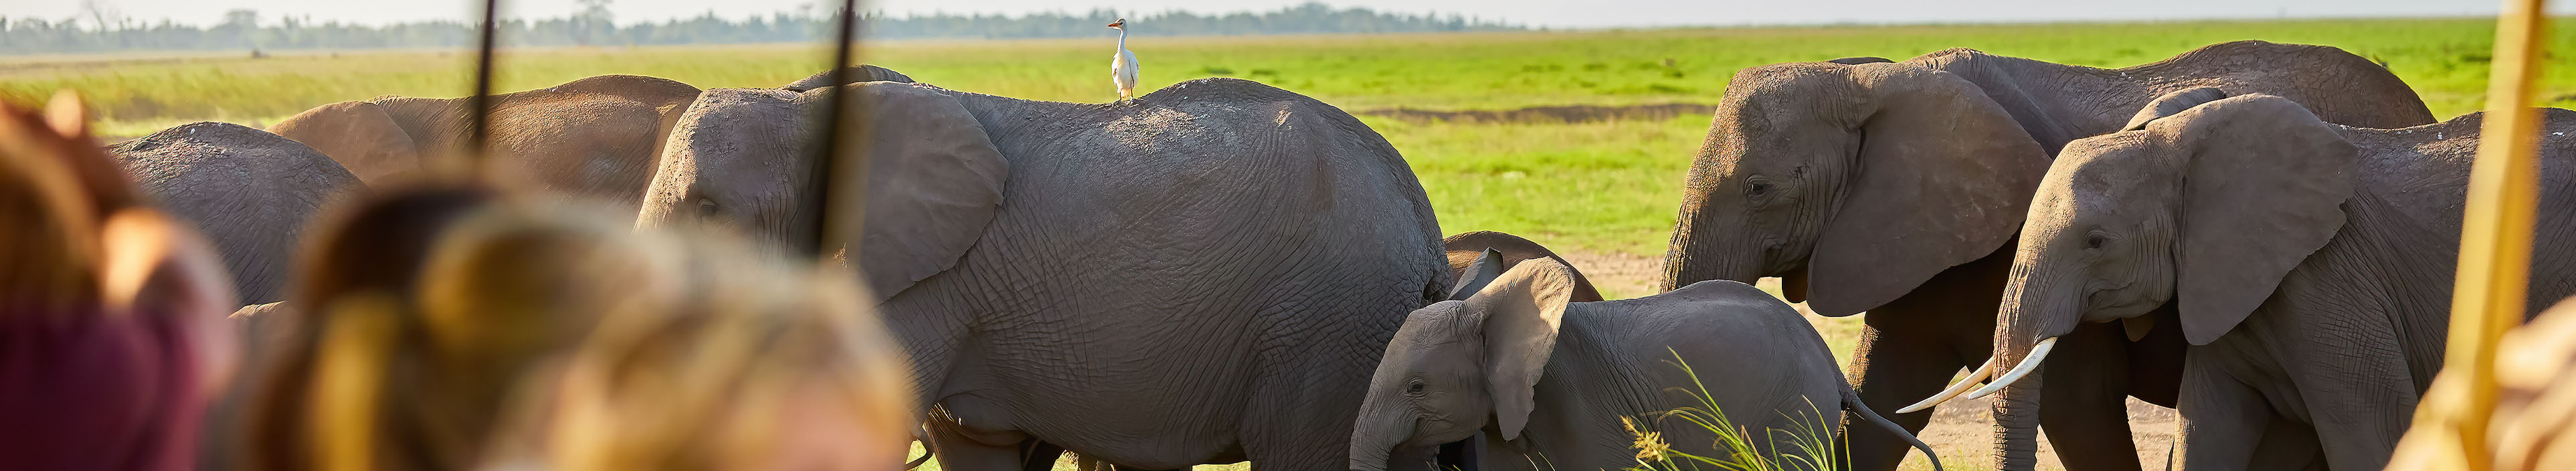 Kinder beobachten afrikanische Elefanten vom Dach eines Safariautos. Familie im Safari-Urlaub.